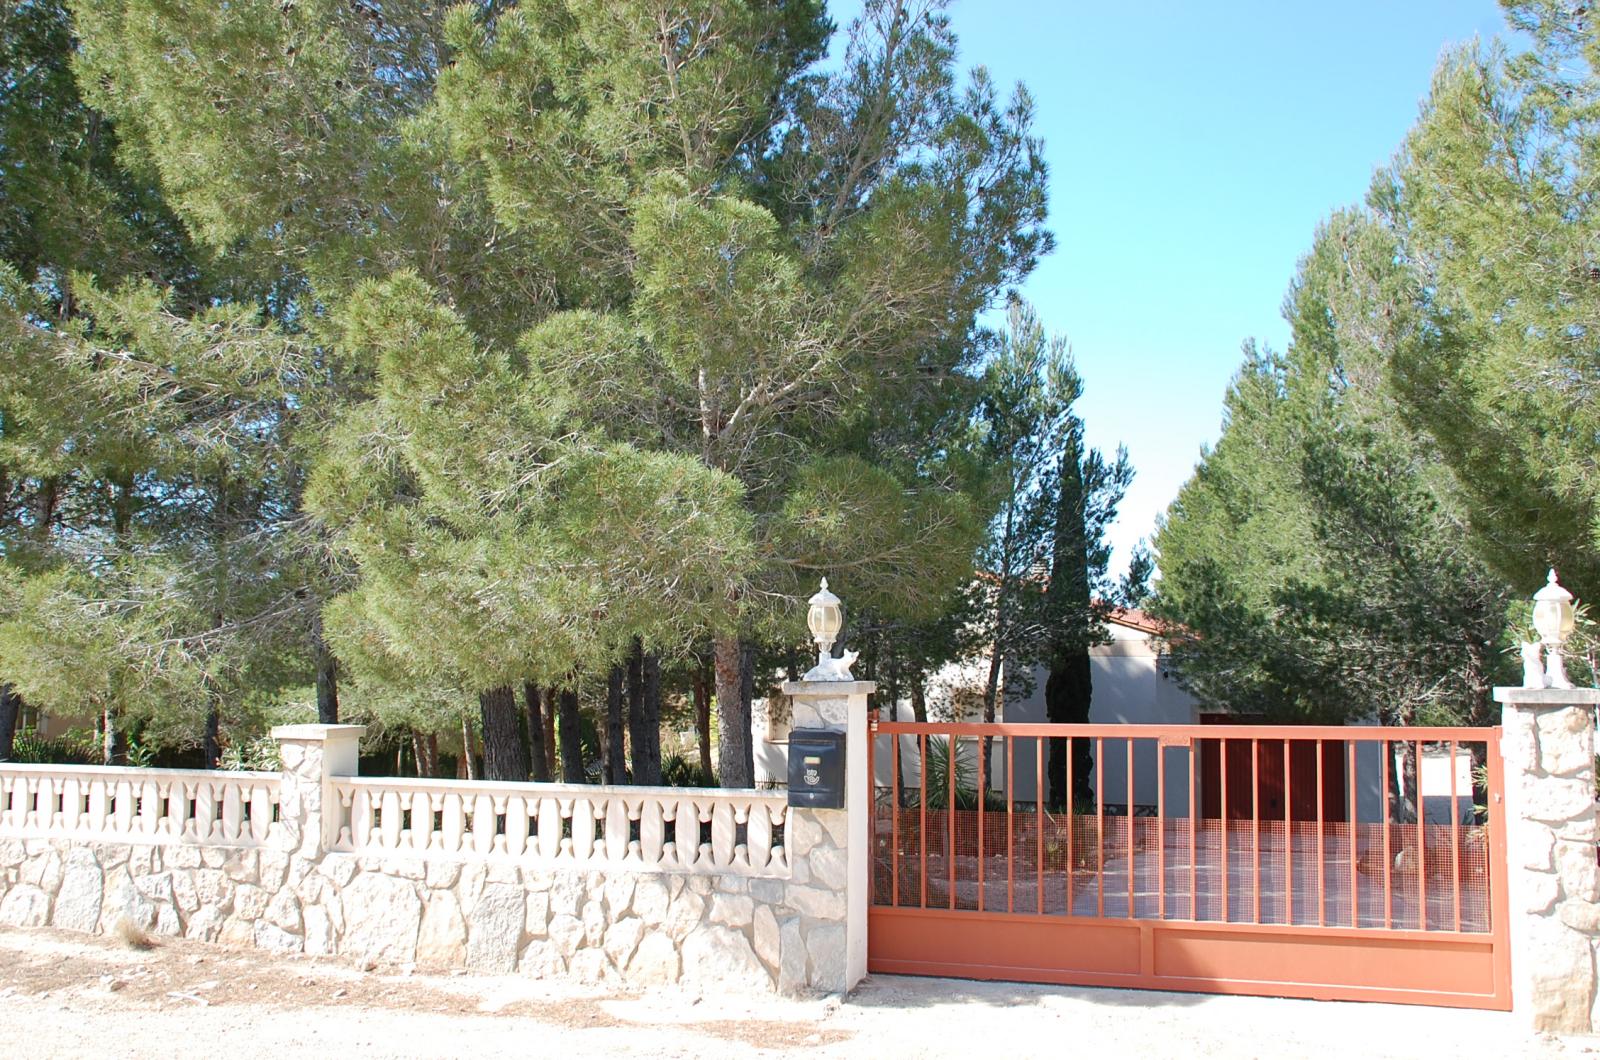 Preciosa villa con piscina privada en plena naturaleza en St Jordi